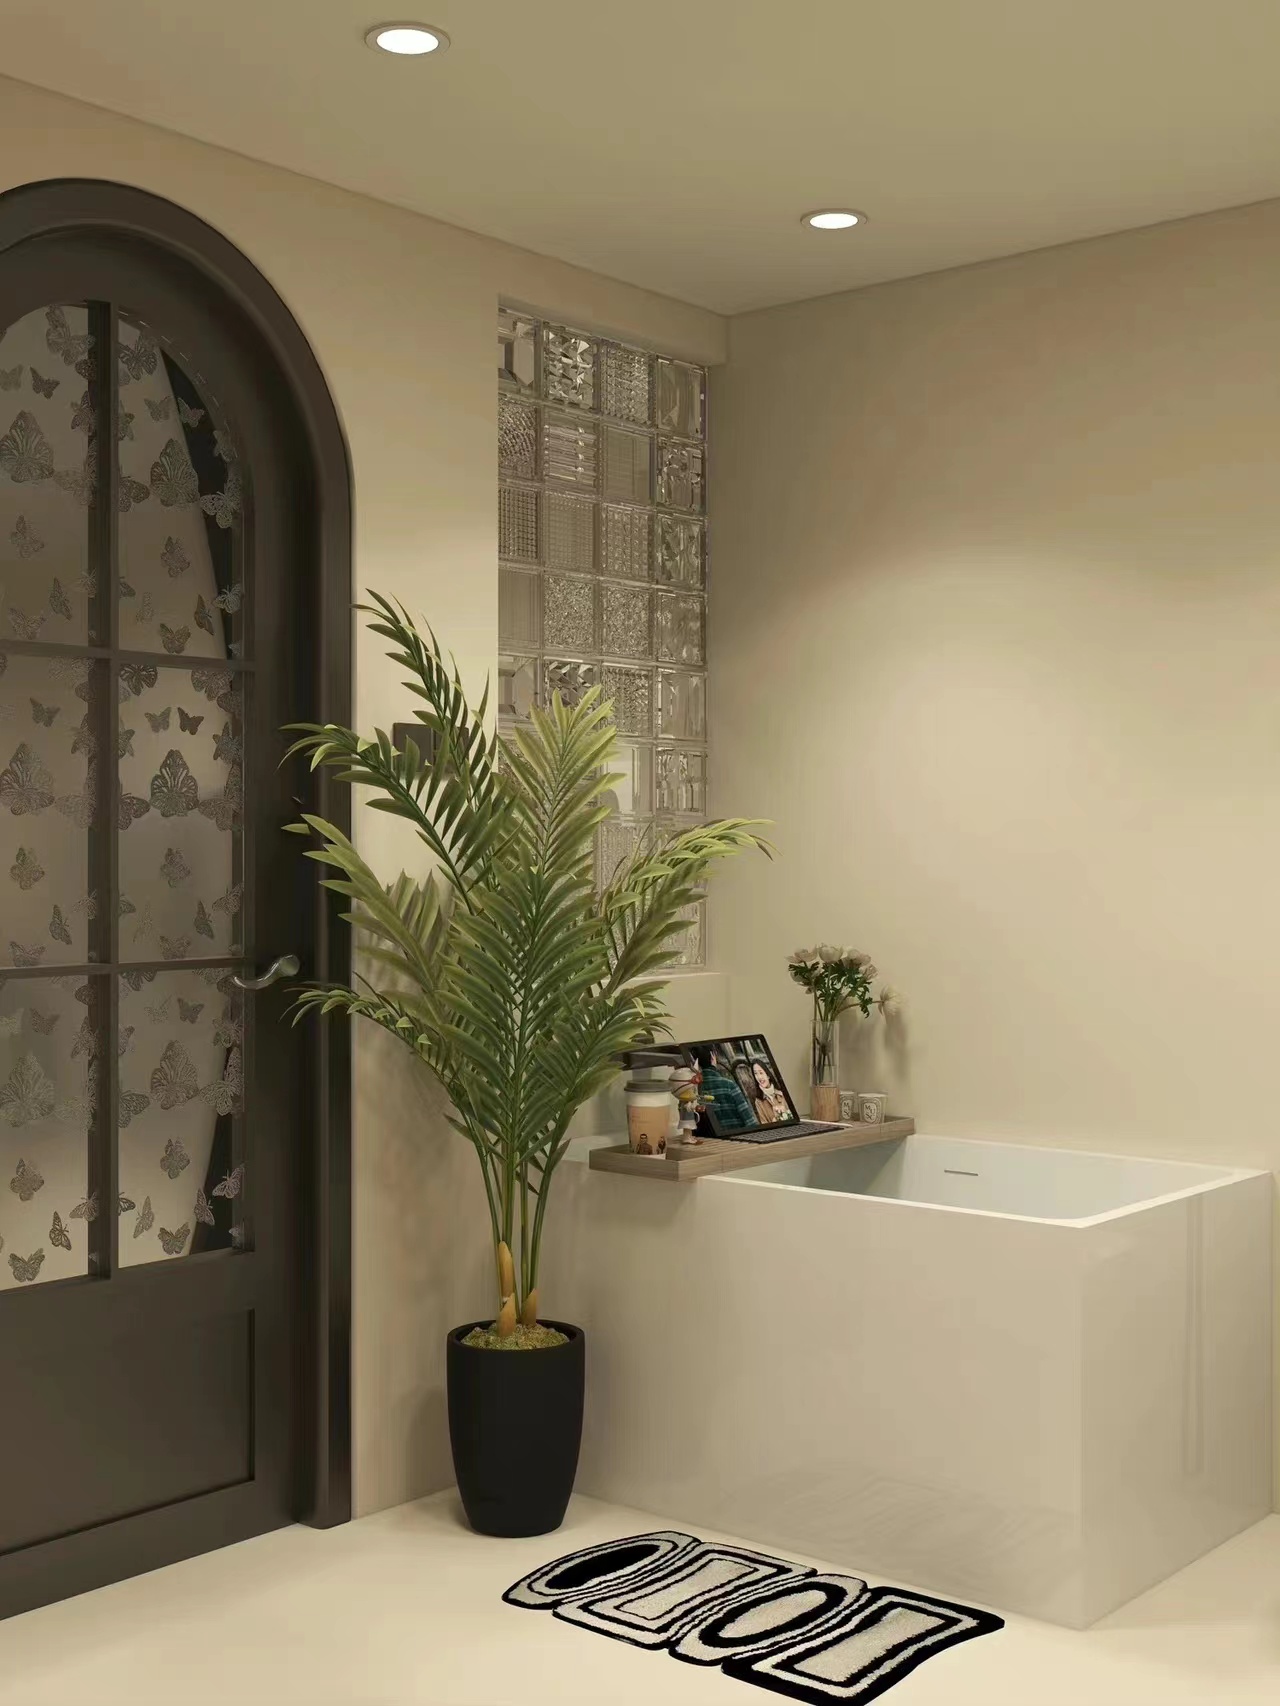 微水泥复古浴室，进去就不想出来了。
美美的复古蝴蝶浴室门很难不爱，整个浴室都是微水泥，搭配一些小绿植和木质元素，又复古又温馨。